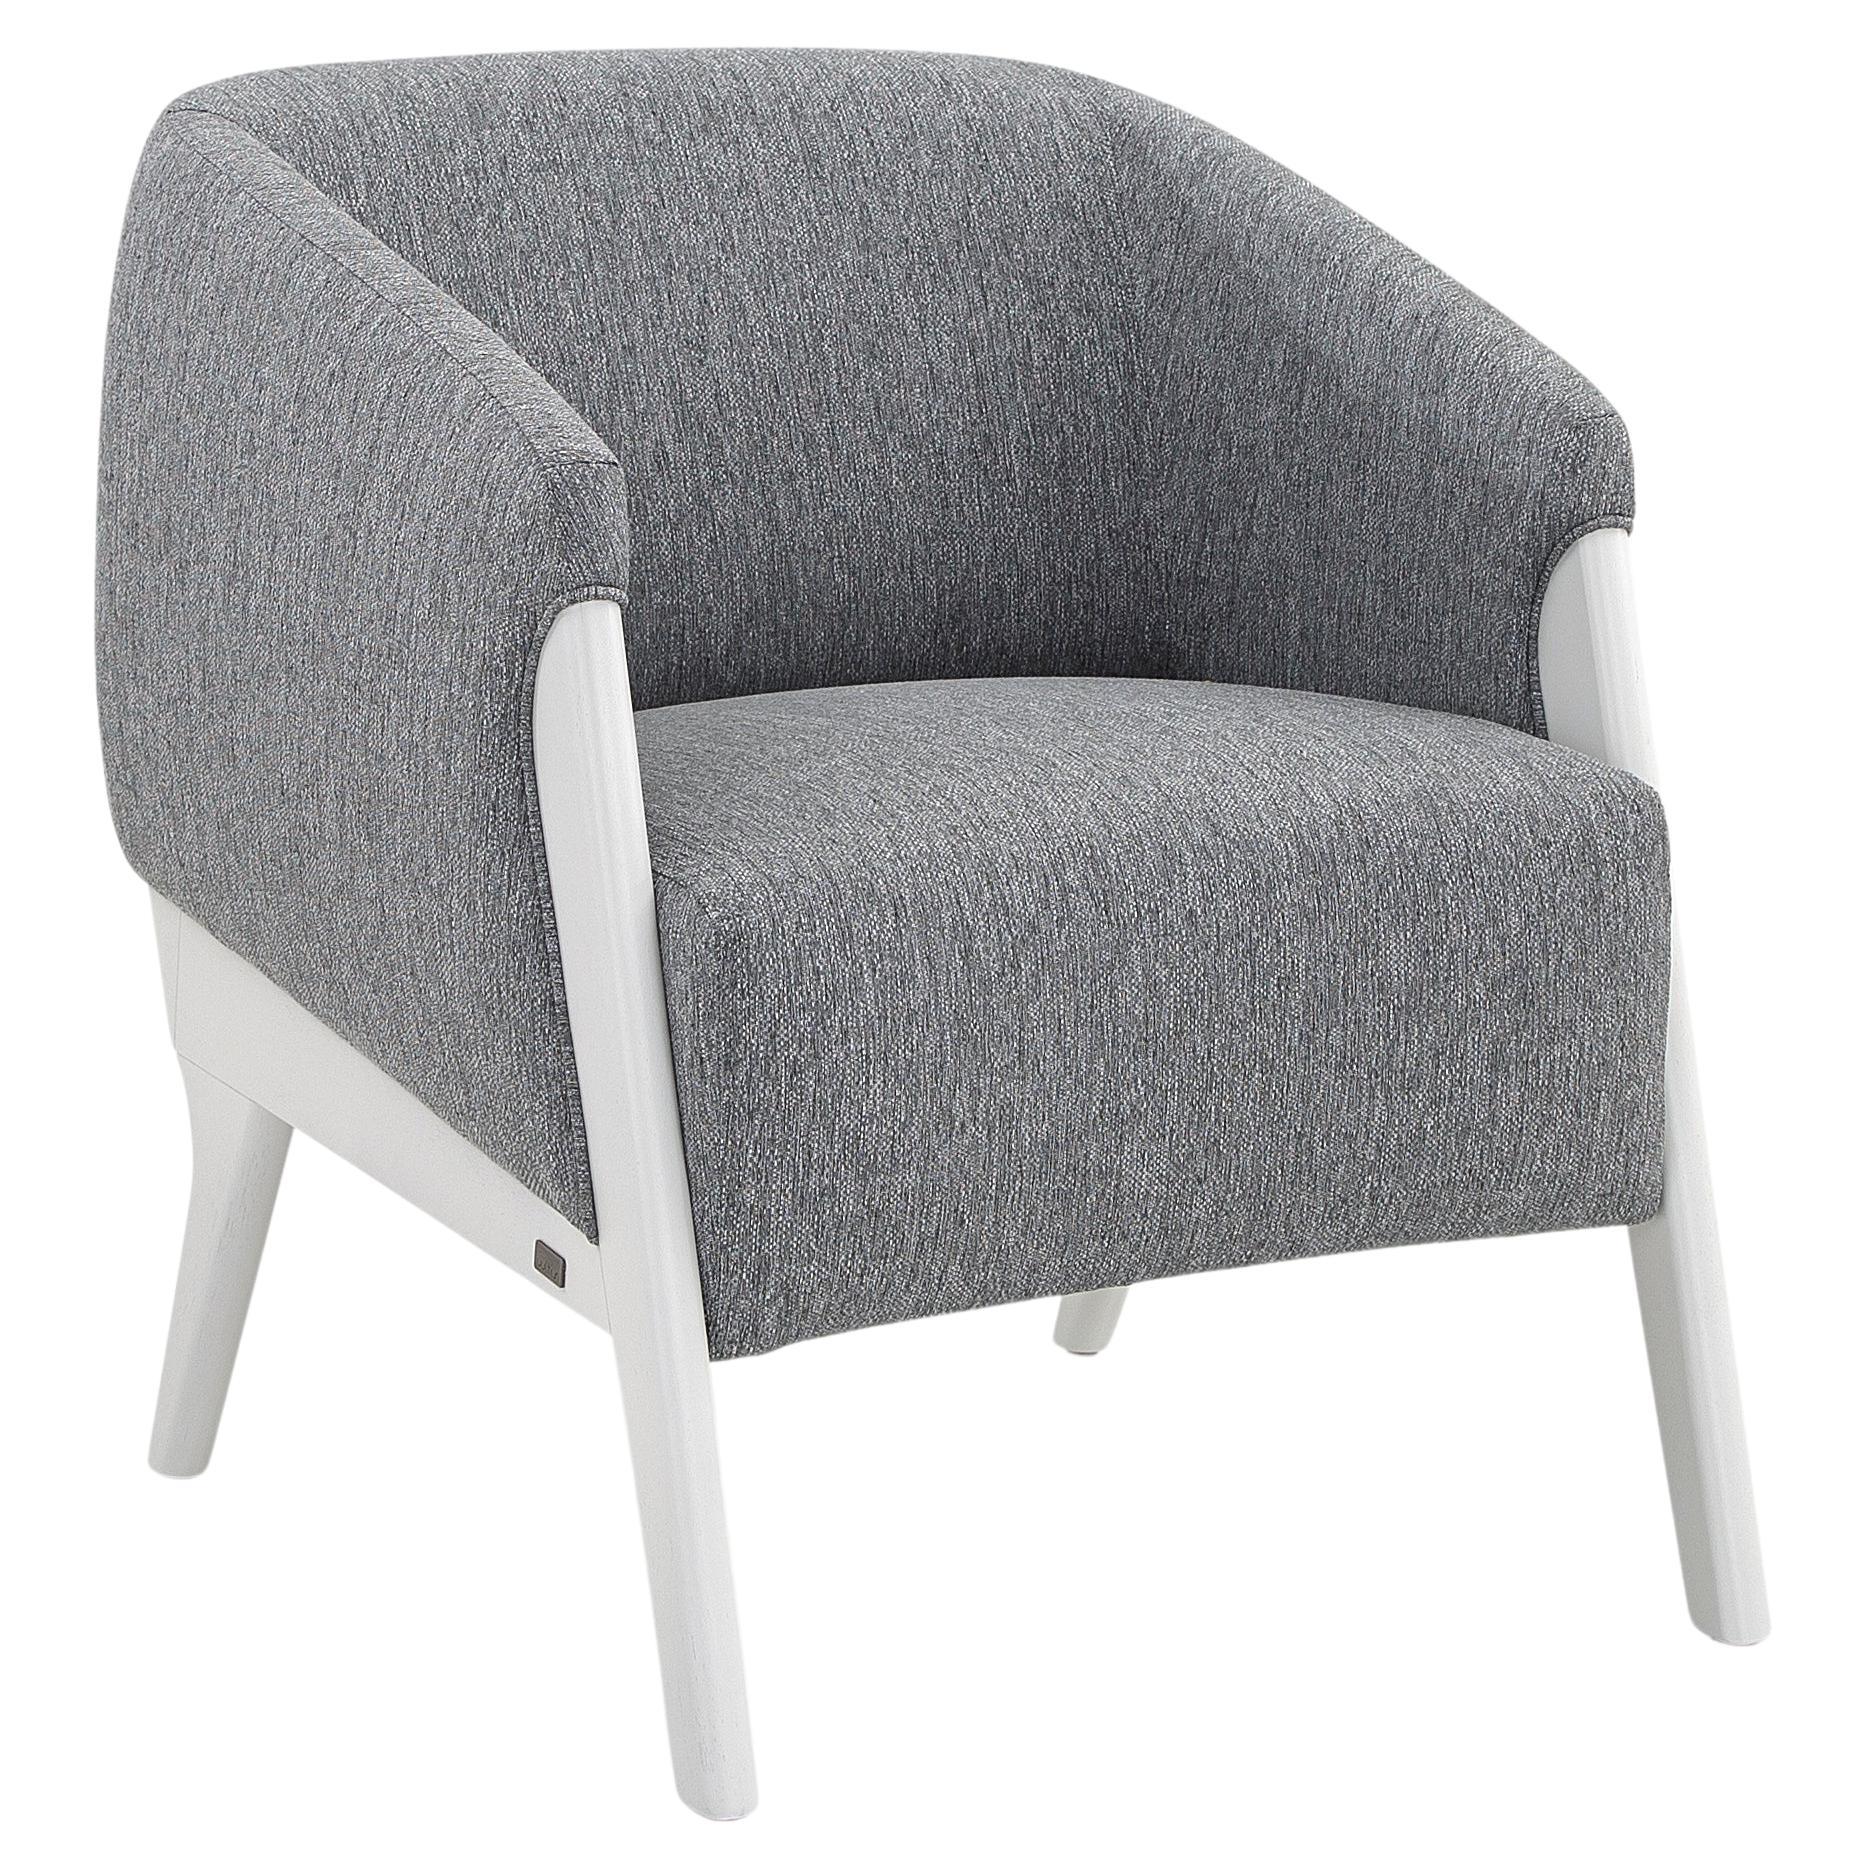 Abra Sessel aus grauem Stoff und weißer Holzoberfläche